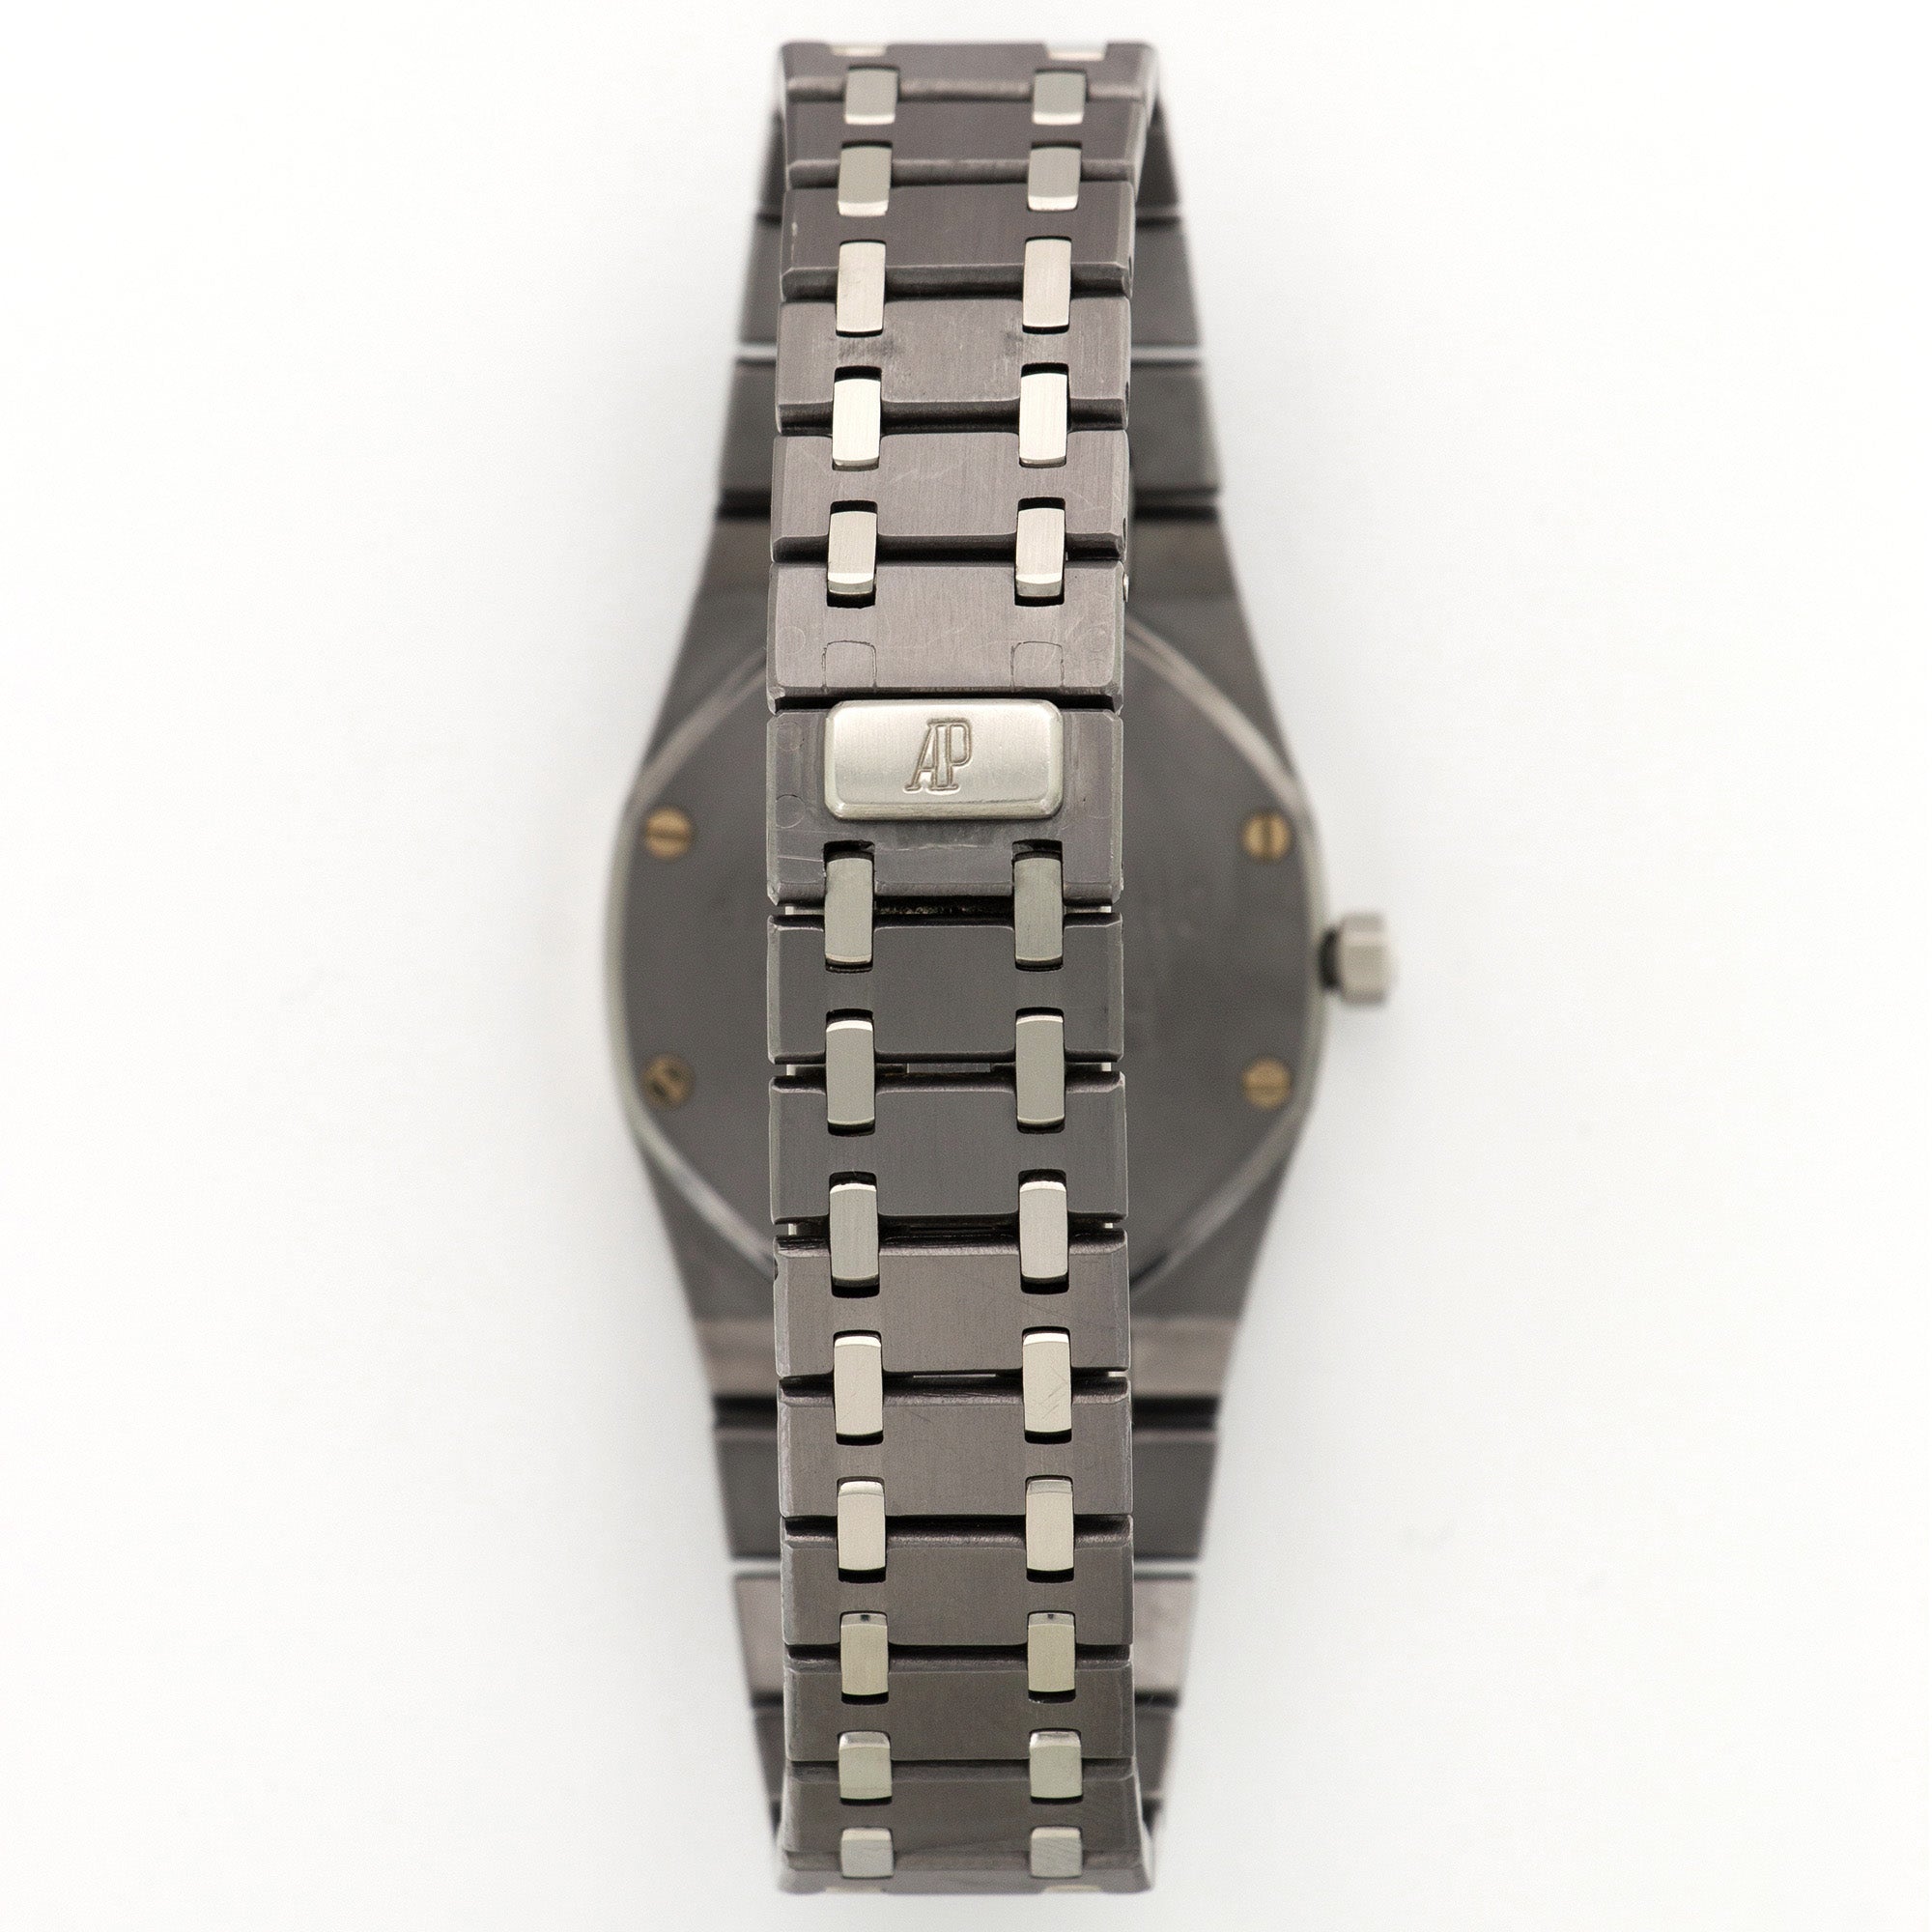 Audemars Piguet - Audemars Piguet Tantalum Royal Oak Championship Watch, Ref. 56175 - The Keystone Watches